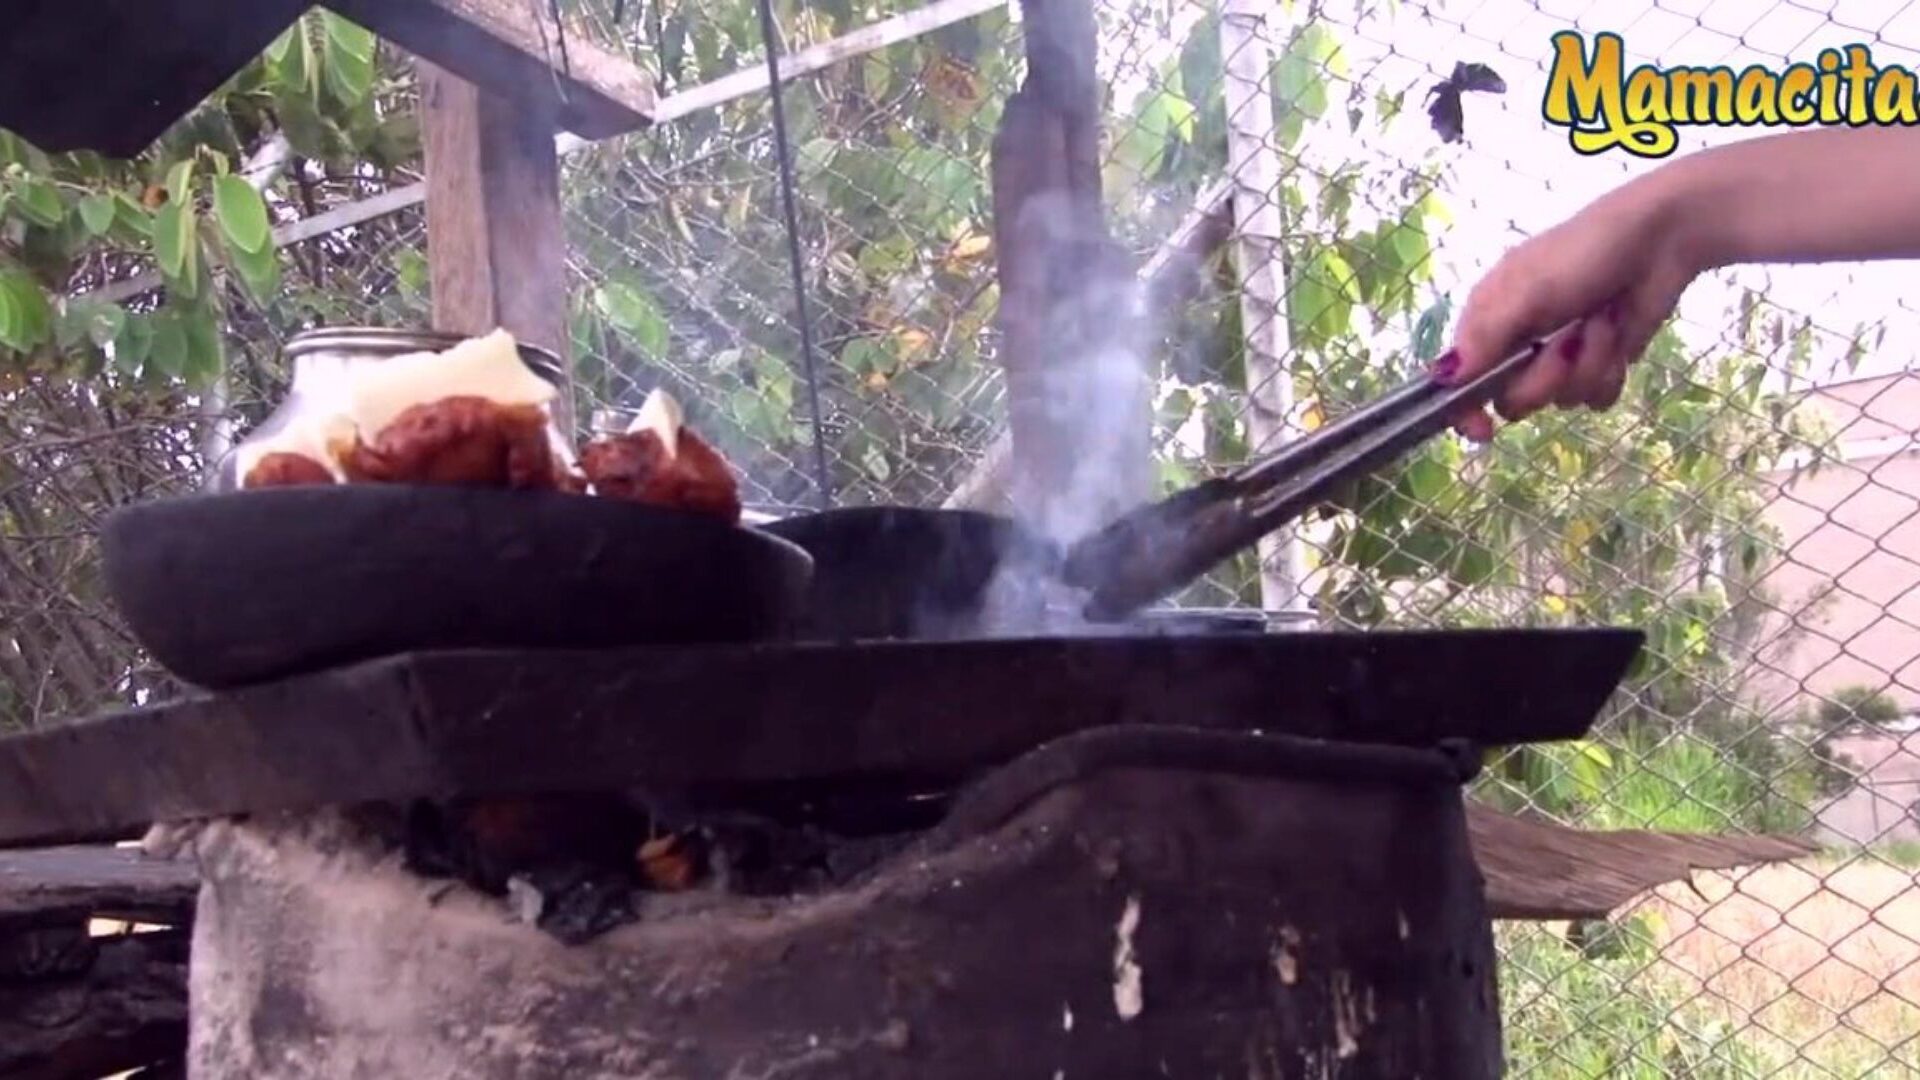 mamacitaz - супер горячий колумбийский продавец мяса жаждет другого вида мяса